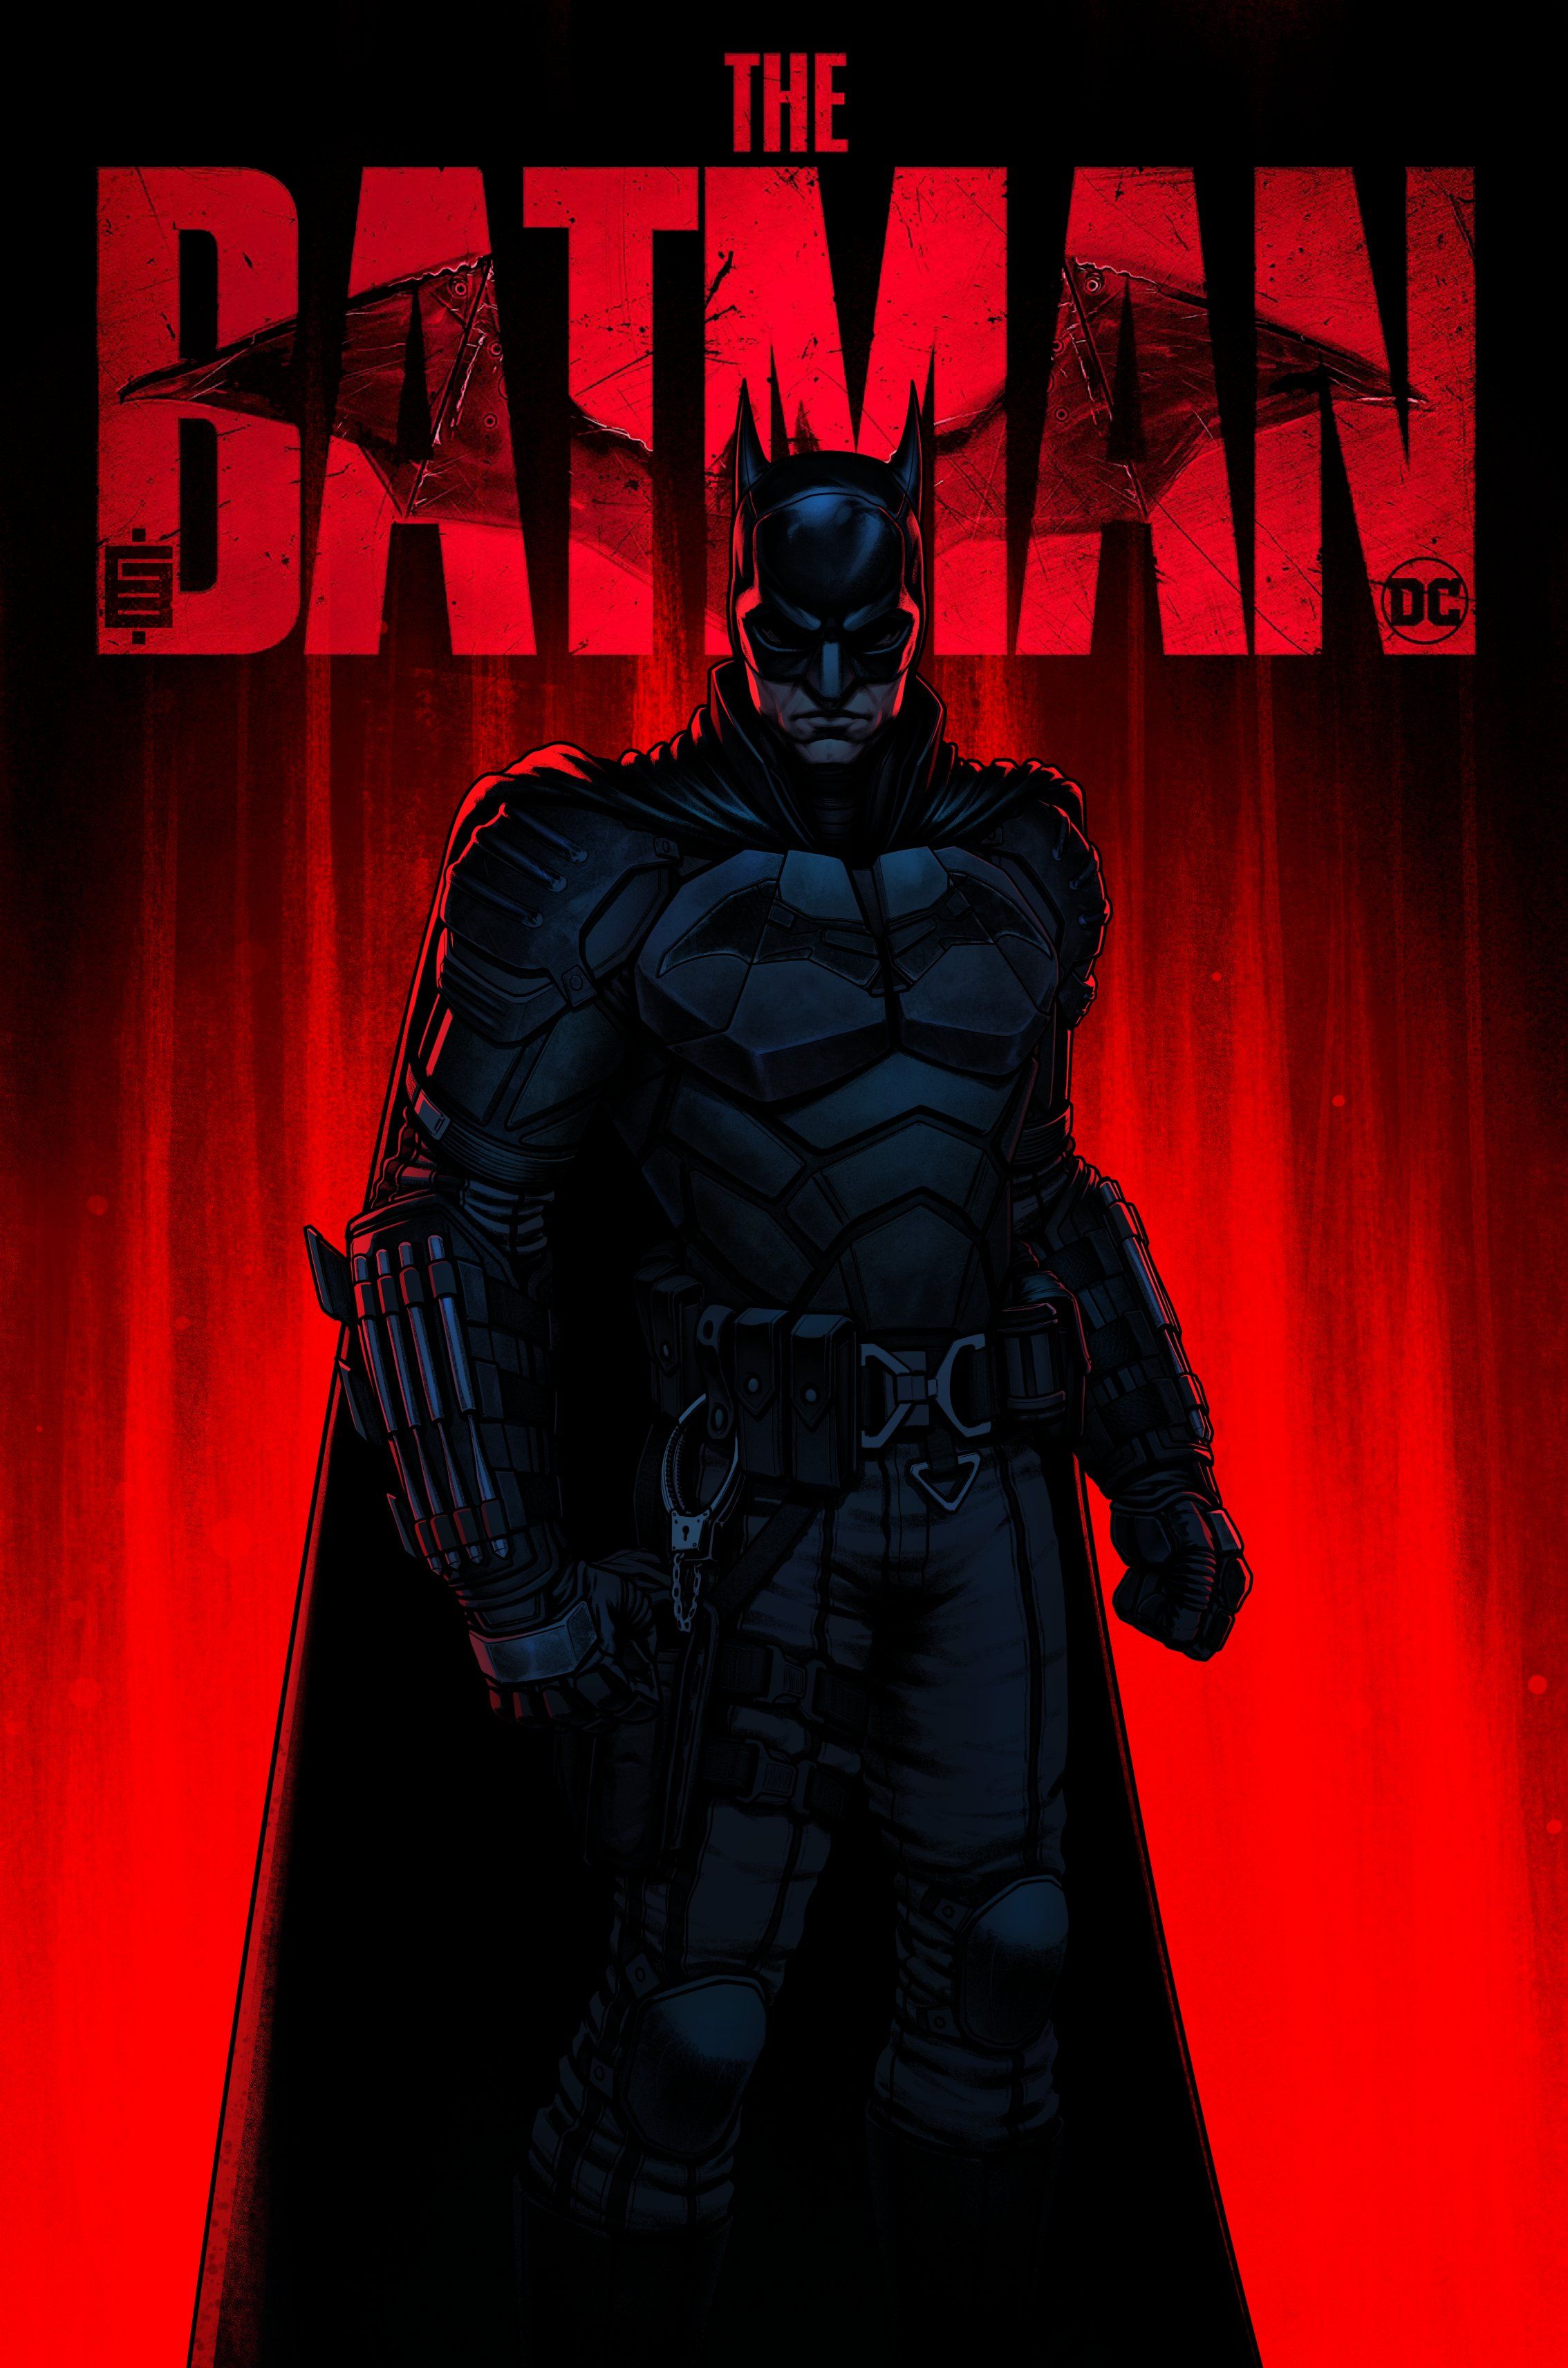 the batman wallpaper : r/iOS16Wallpaper